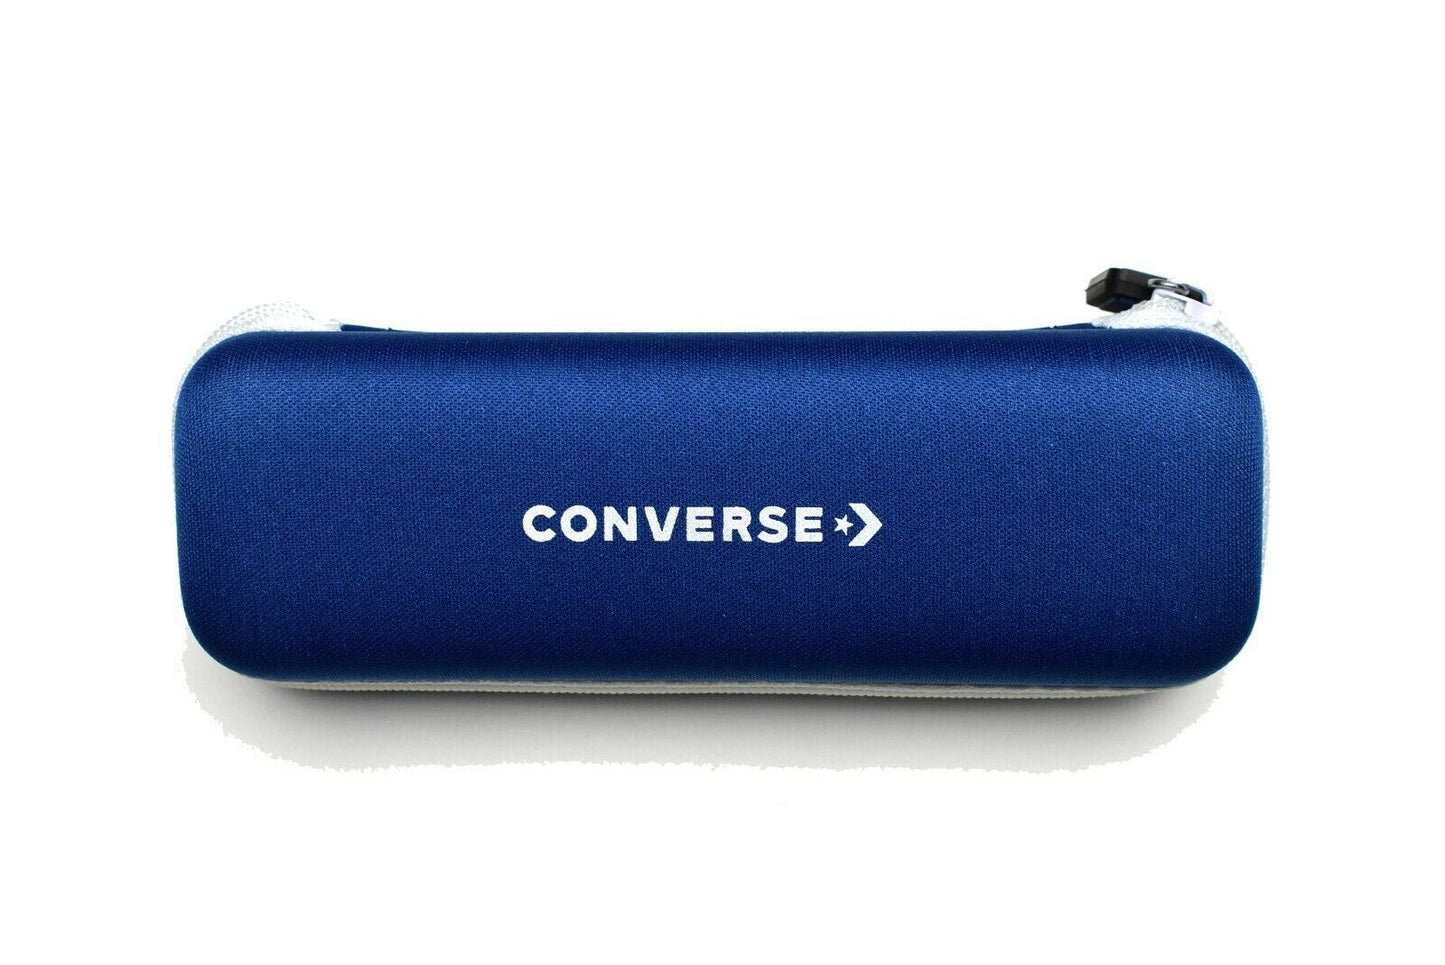 Converse CV5025Y-020-5018 50mm New Eyeglasses